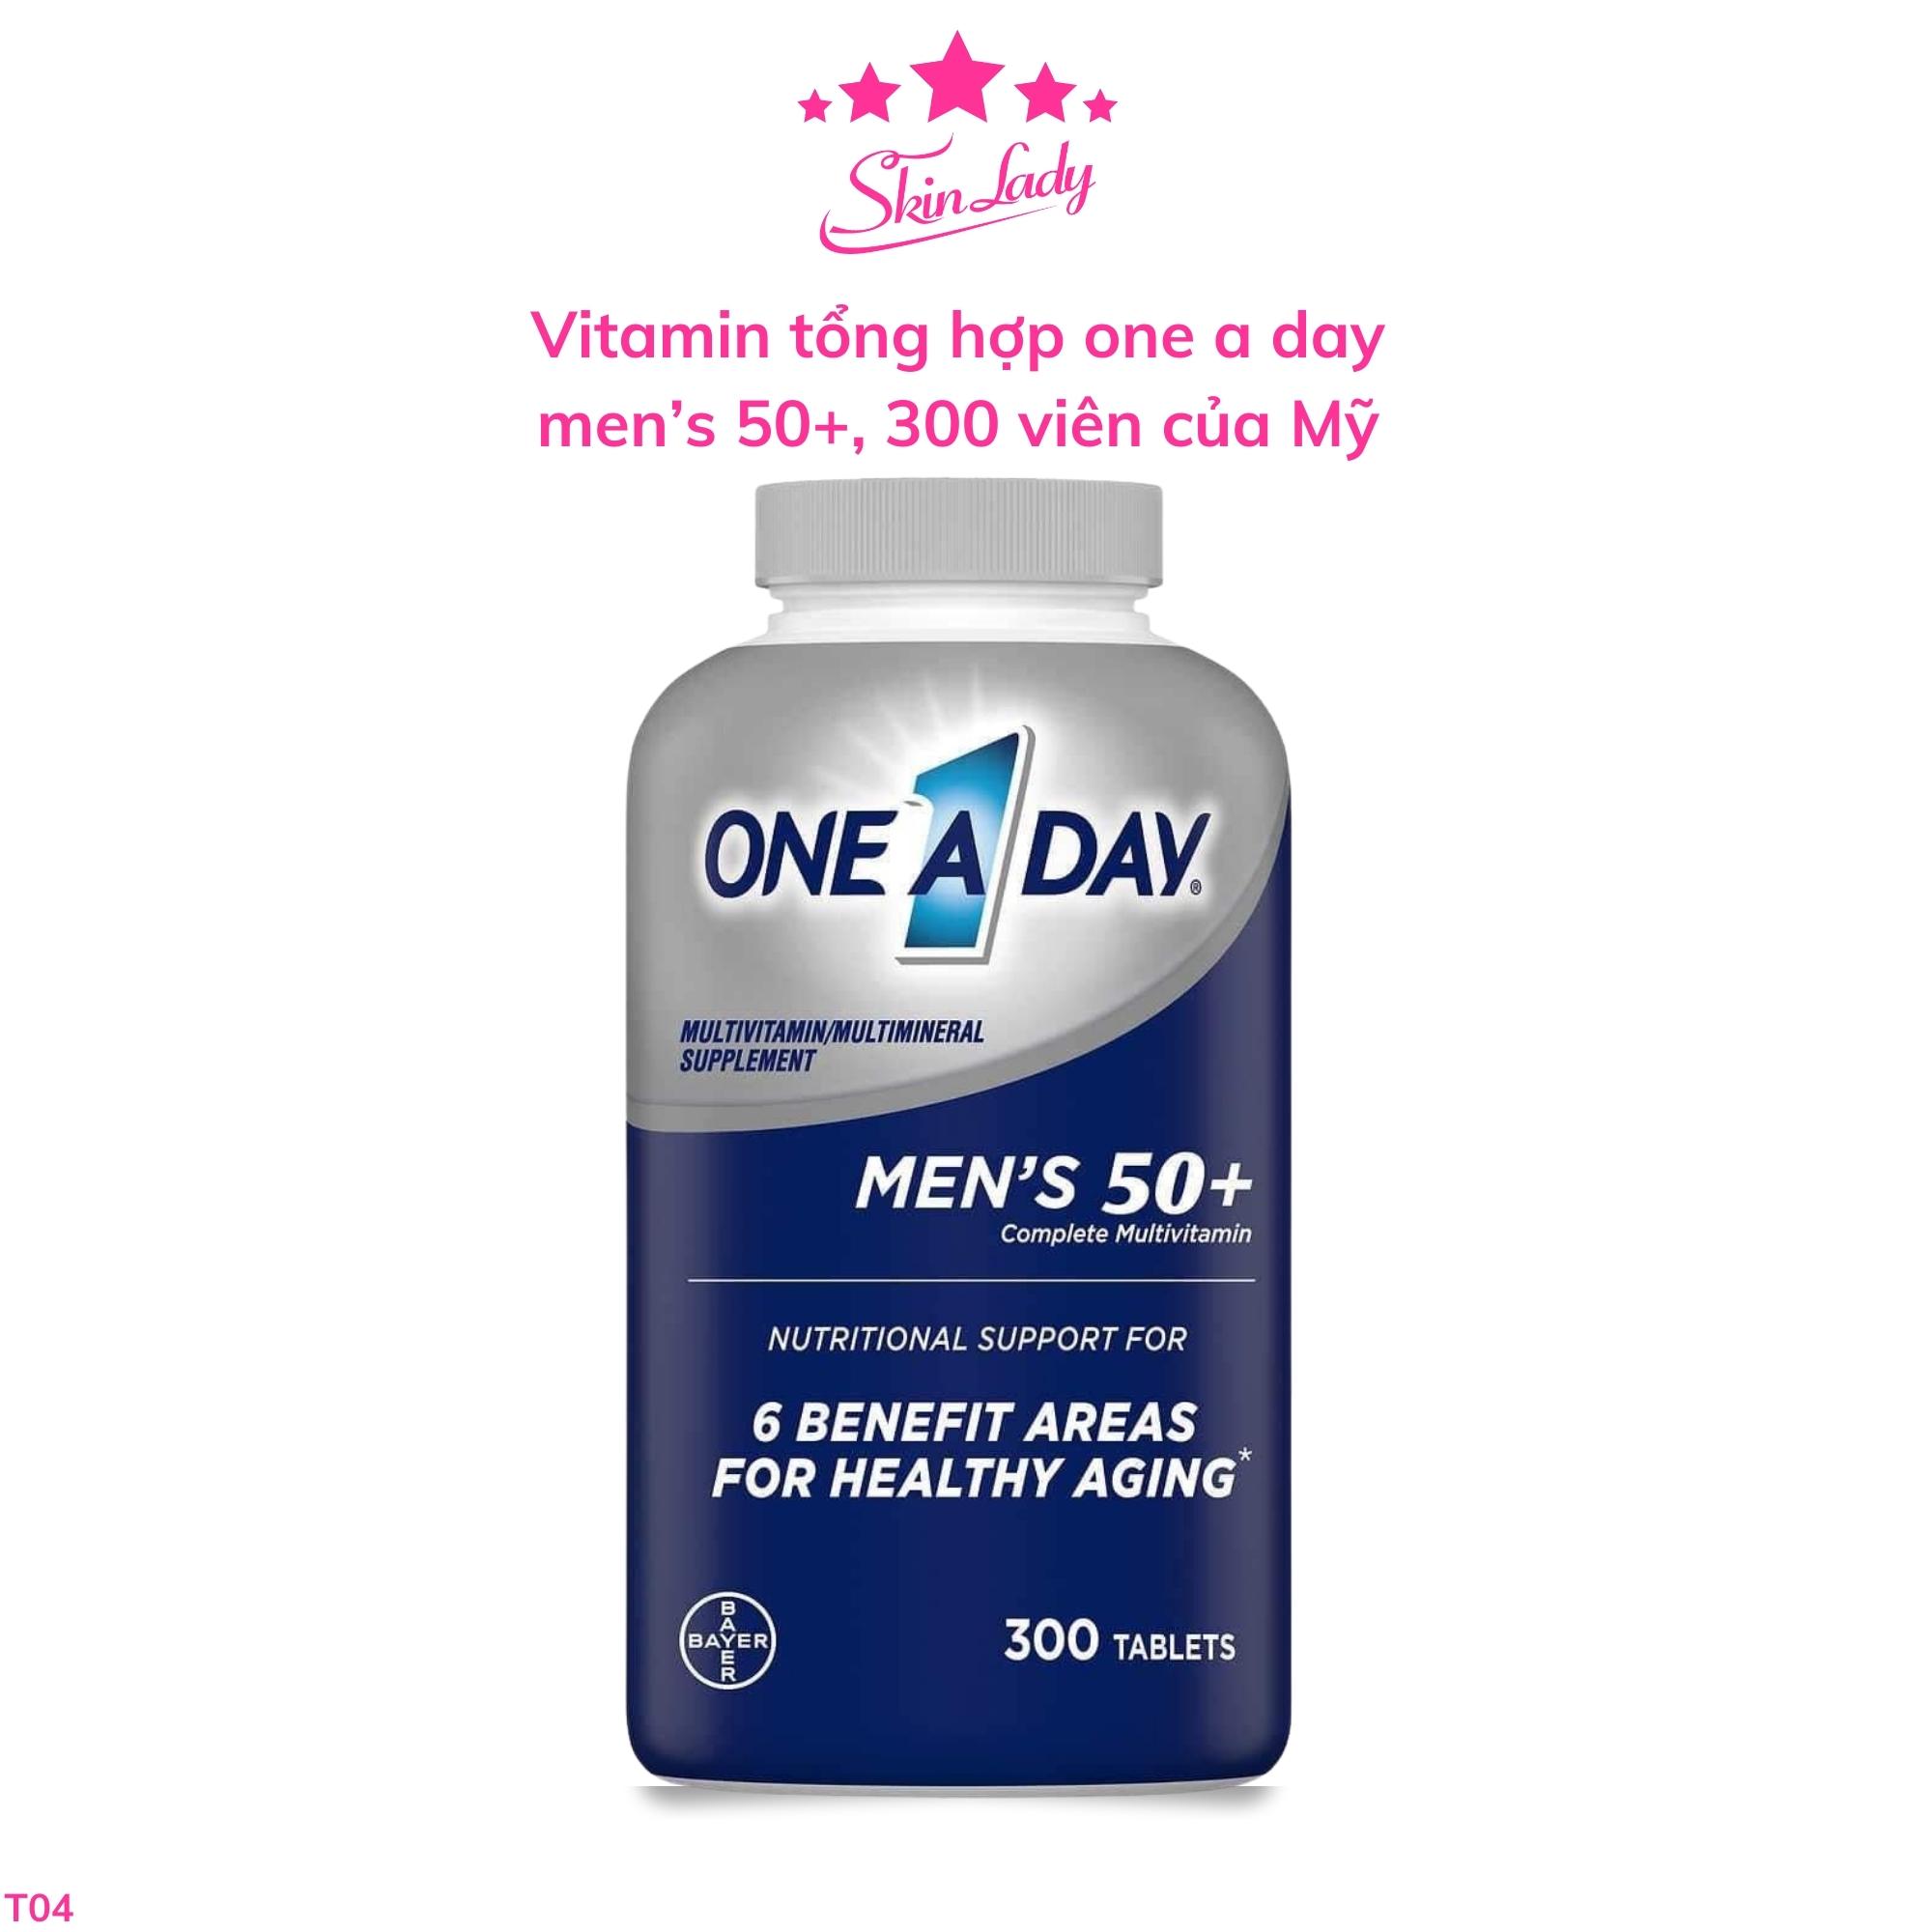 vitamin tổng hợp one a day men s 50+, 300 viên của Mỹ Skinlady